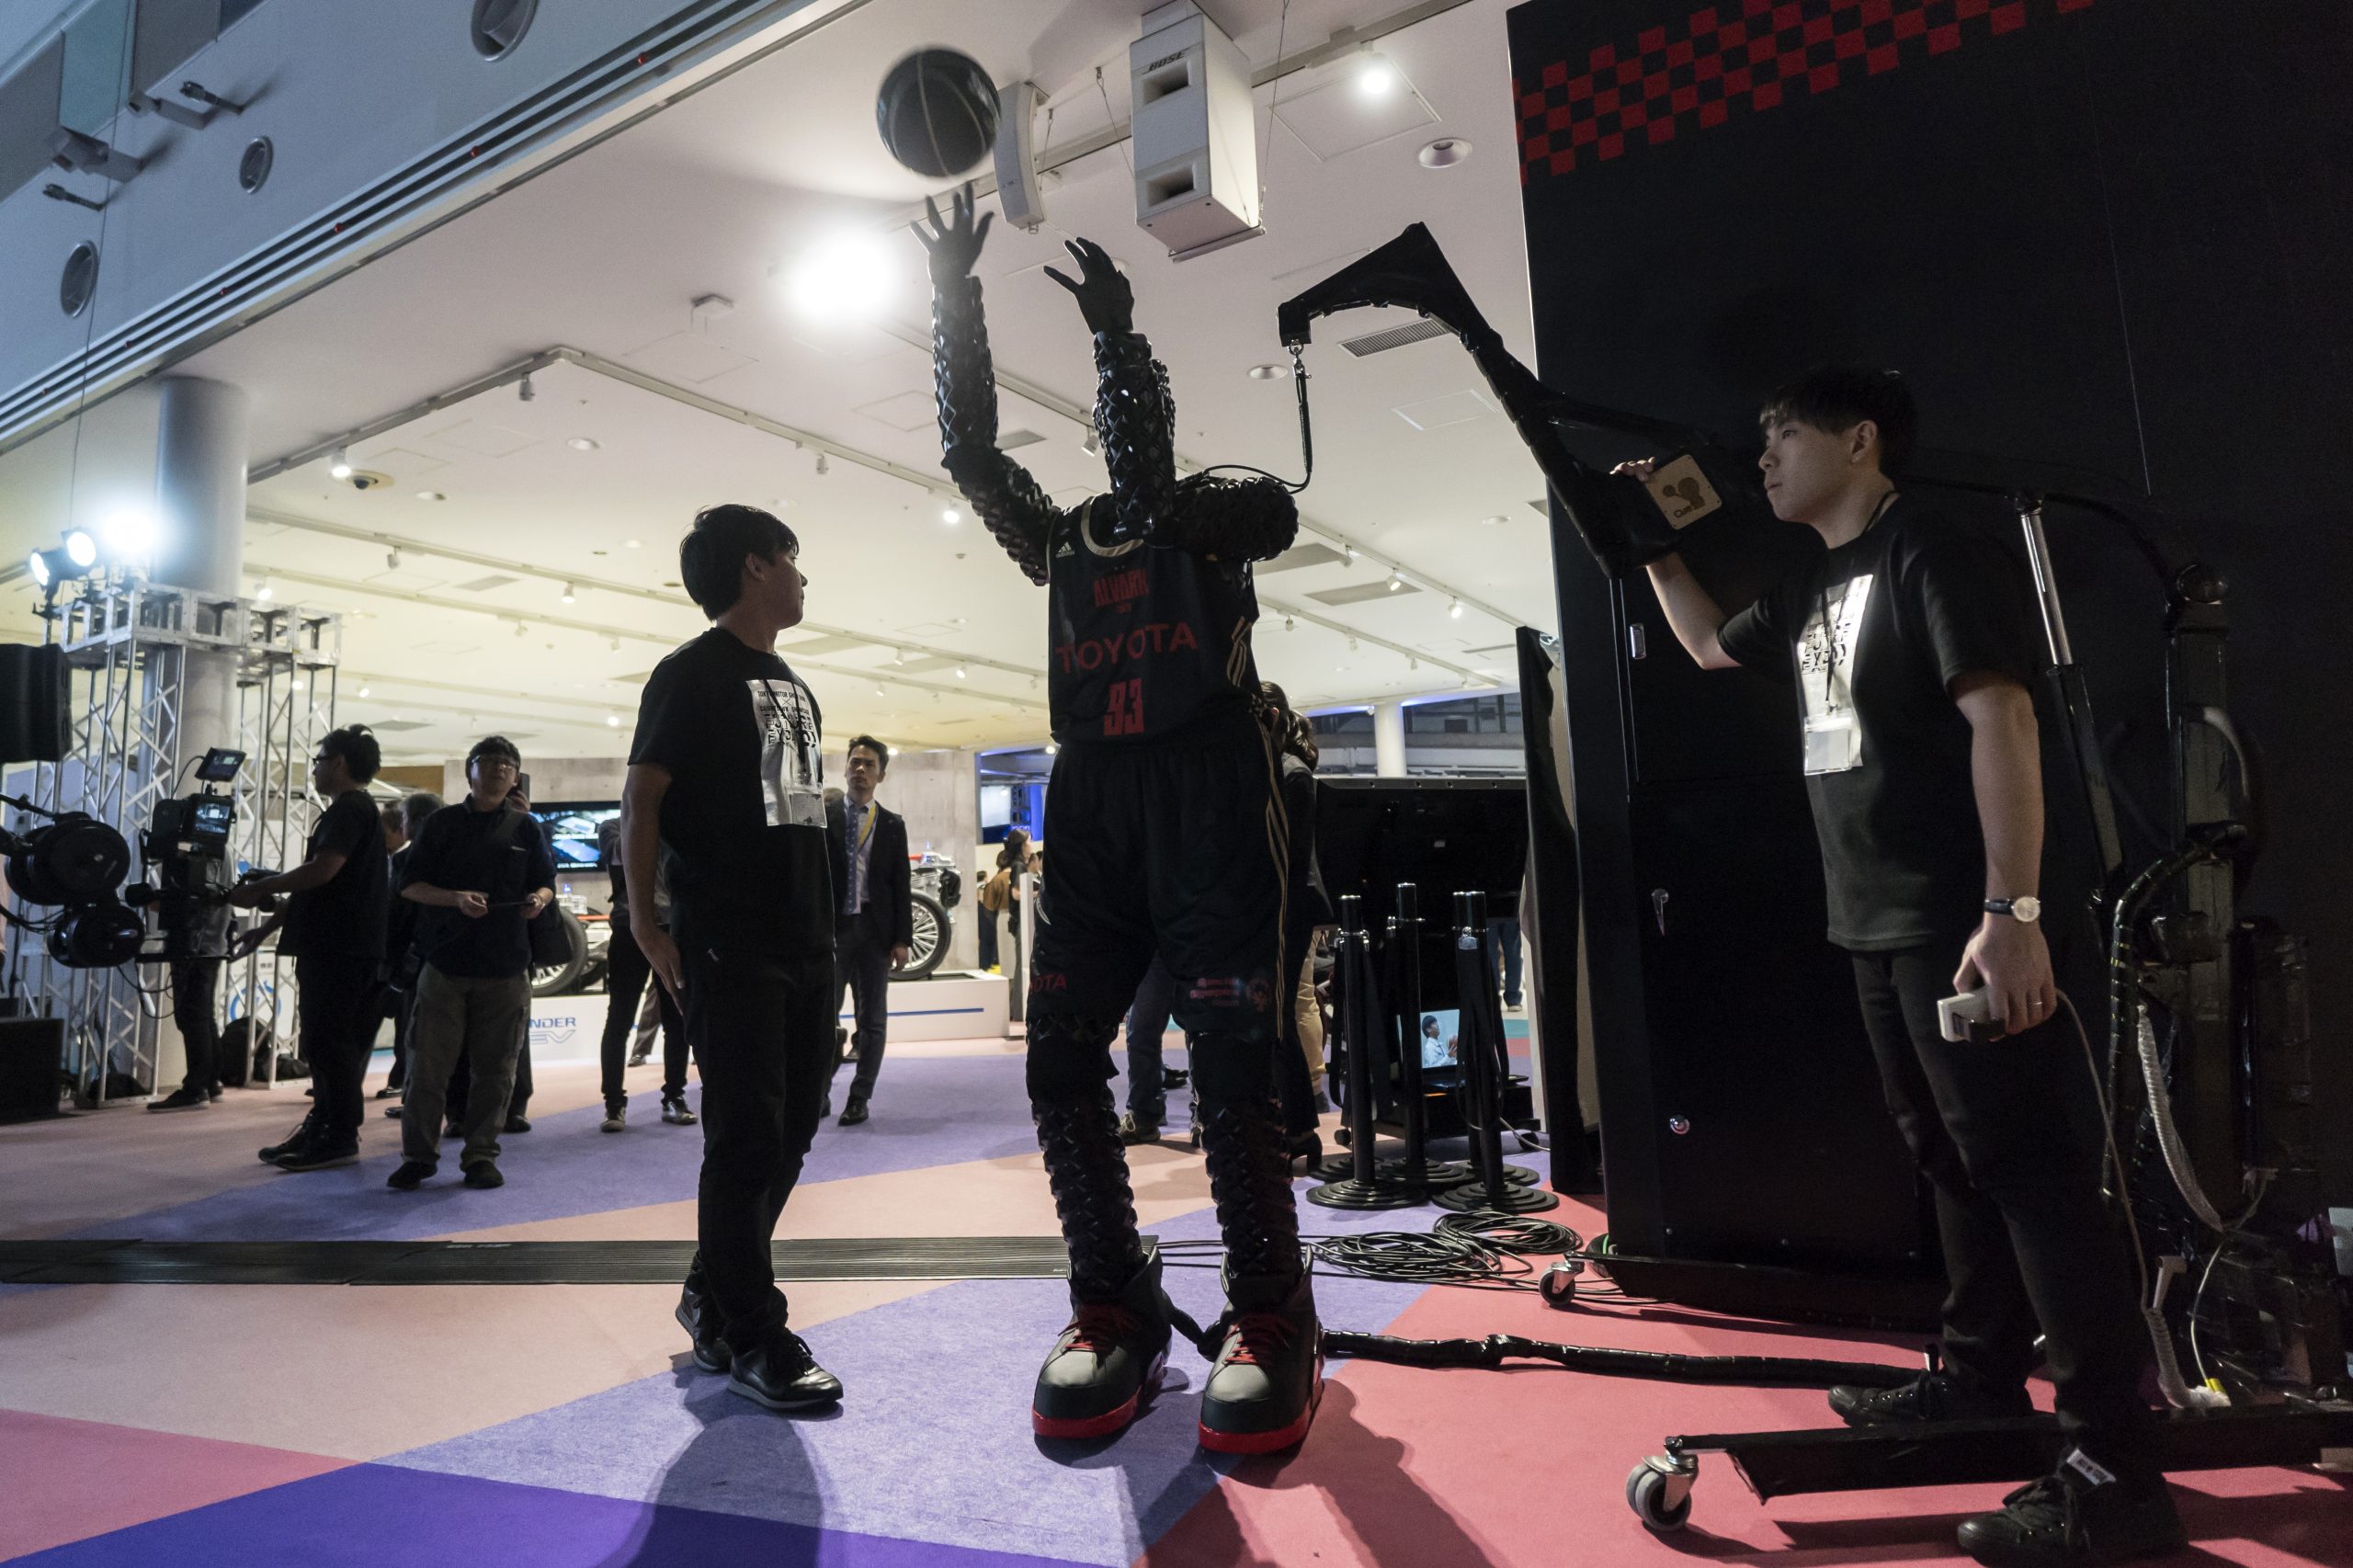 Inteligentny robot profesjonalnym koszykarzem? Toyota wciąż pracuje nad rozwojem projektu CUE